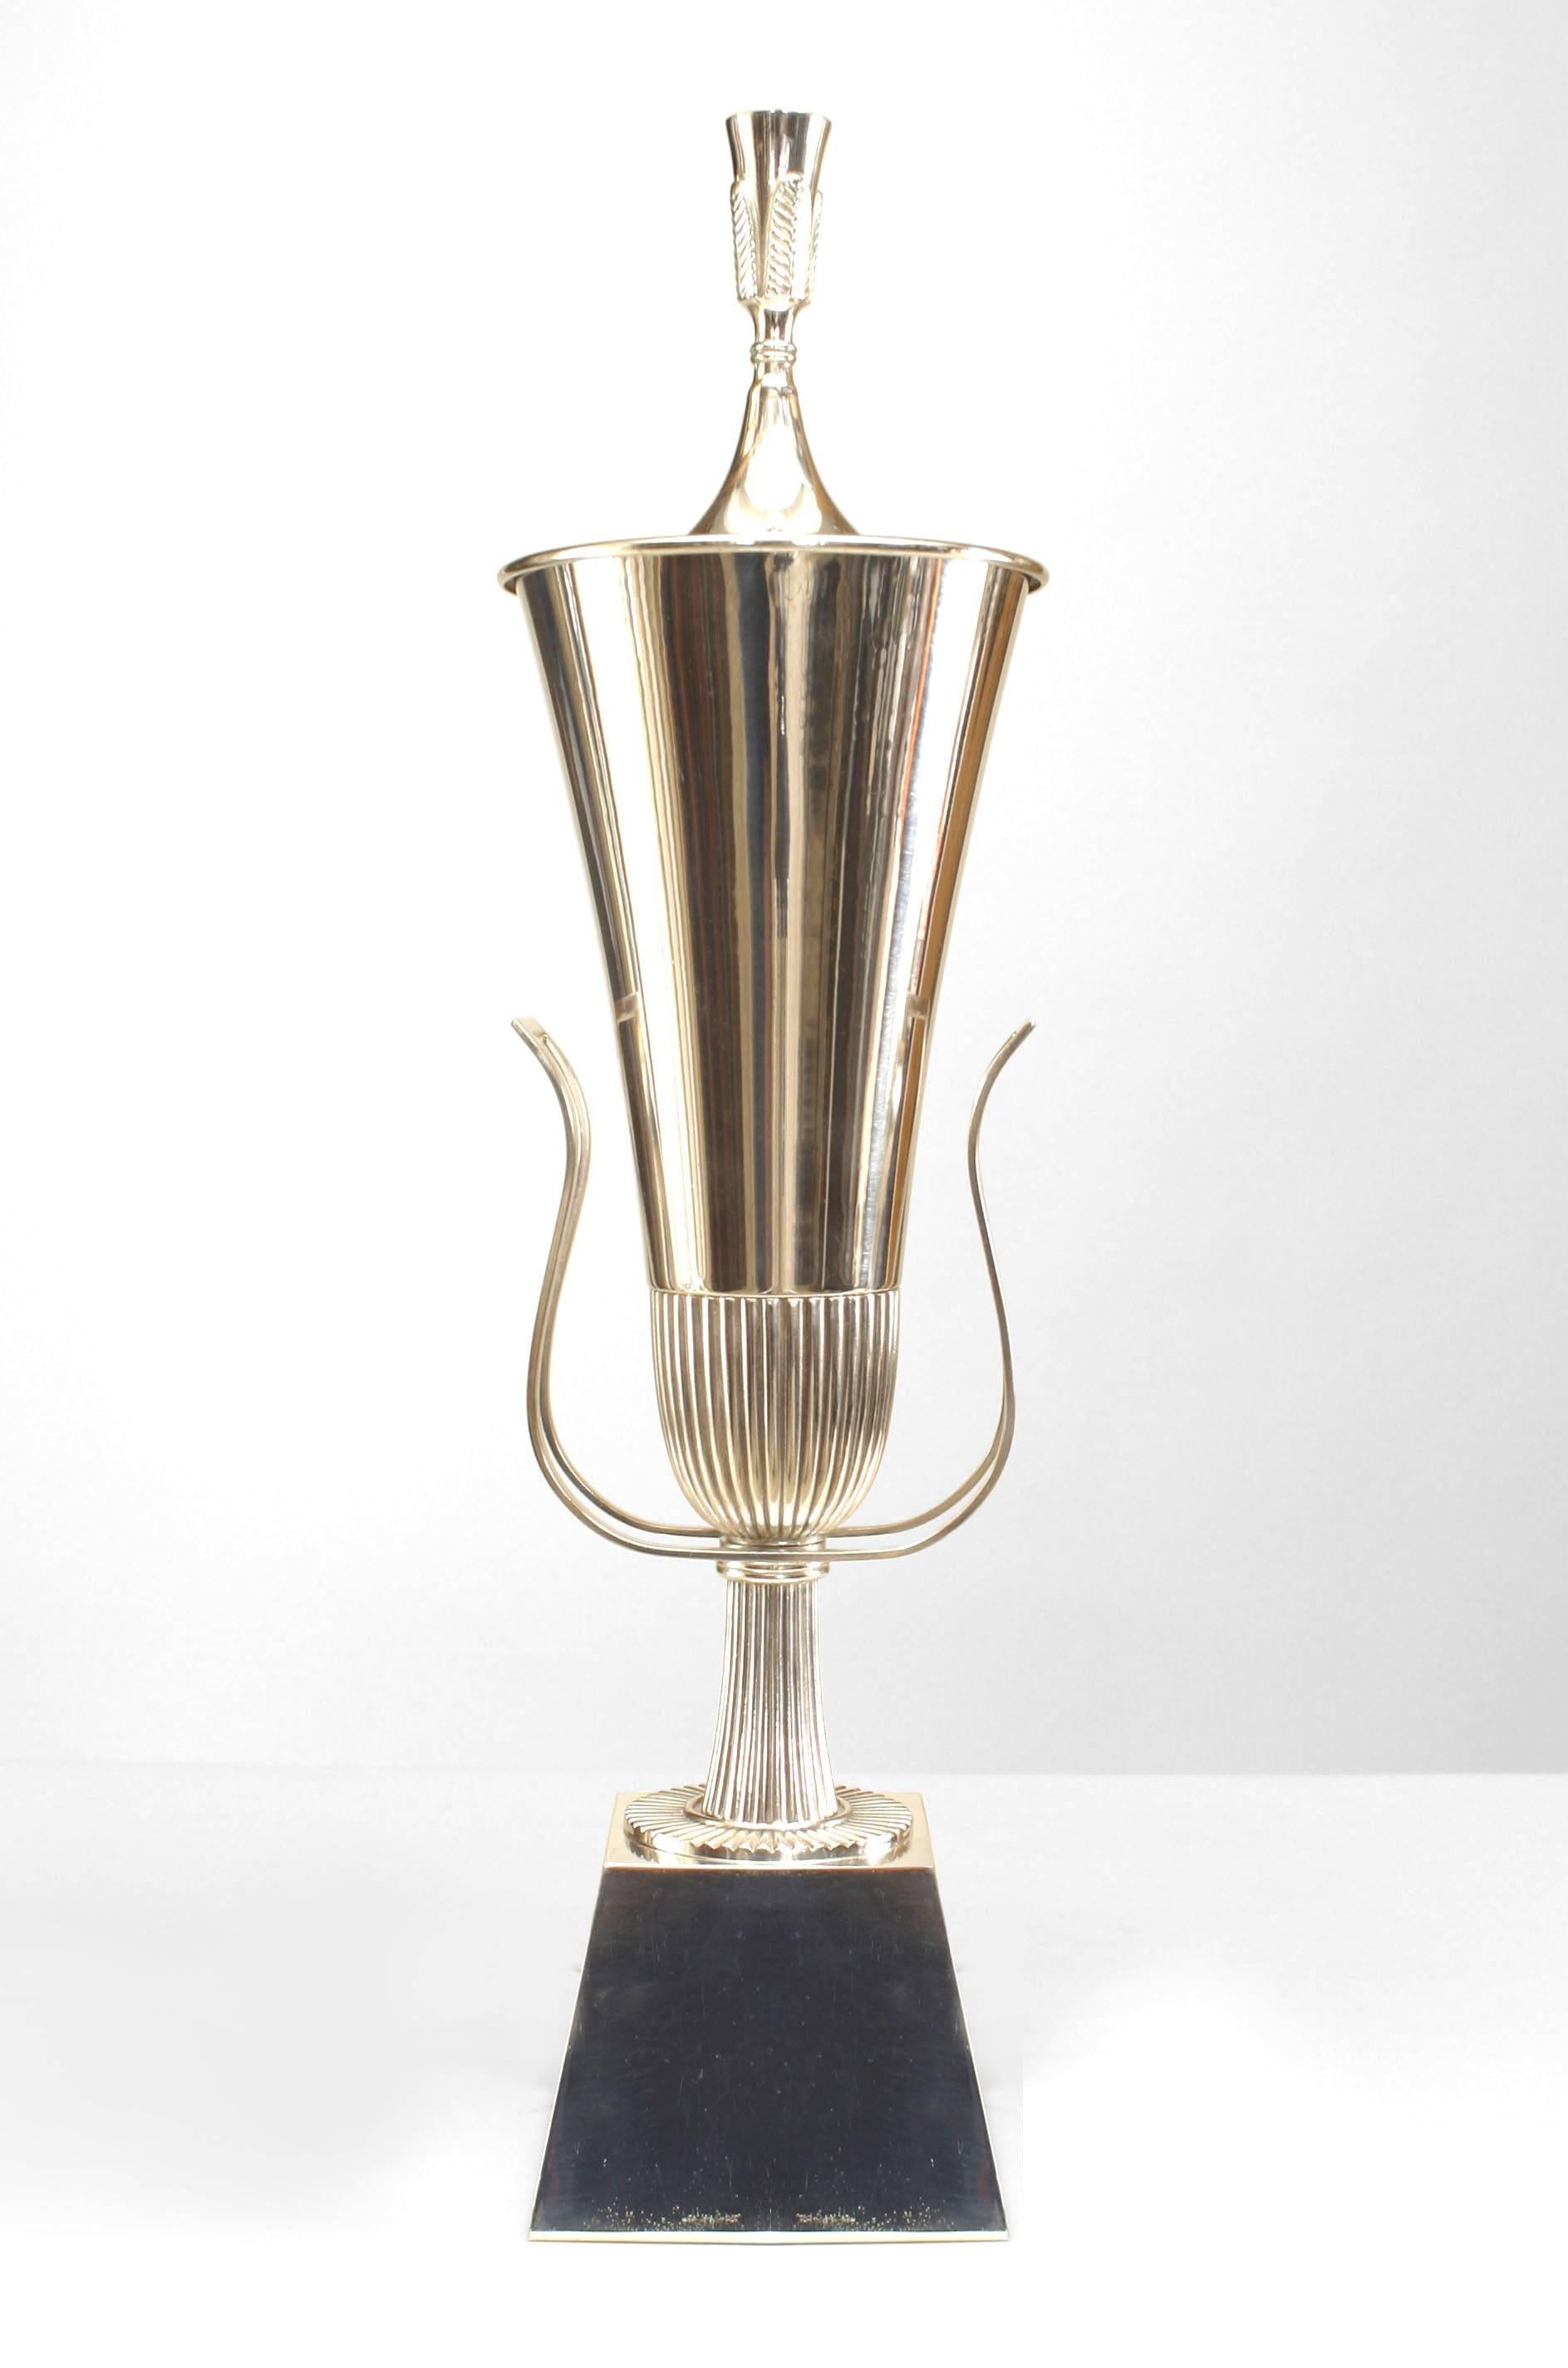 Paire de lampes de table américaines Art Moderne en métal argenté en forme d'urne avec des poignées et un couvercle avec un fleuron sur une base carrée effilée (LIGHTOLIER-designed by TOMMI PARZINGER) (PRIX PAR PAIRE).
